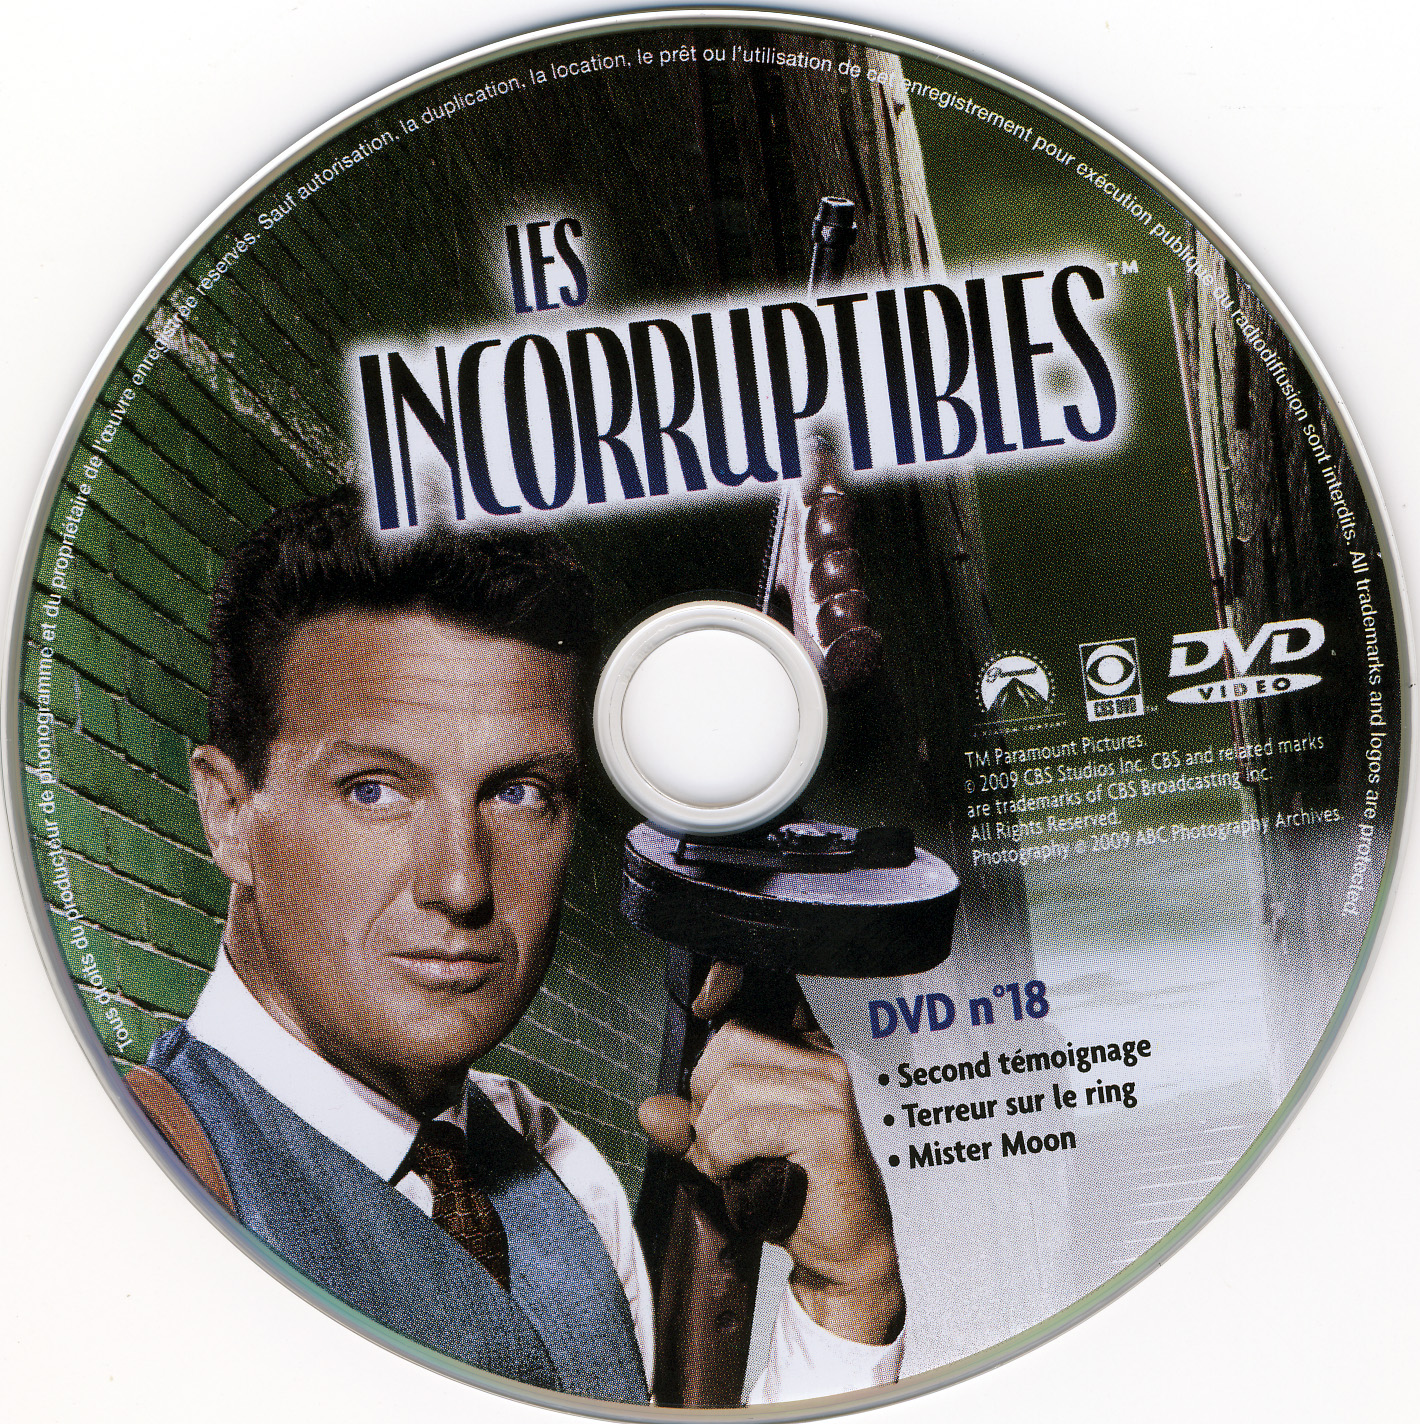 Les incorruptibles intgrale DVD 18